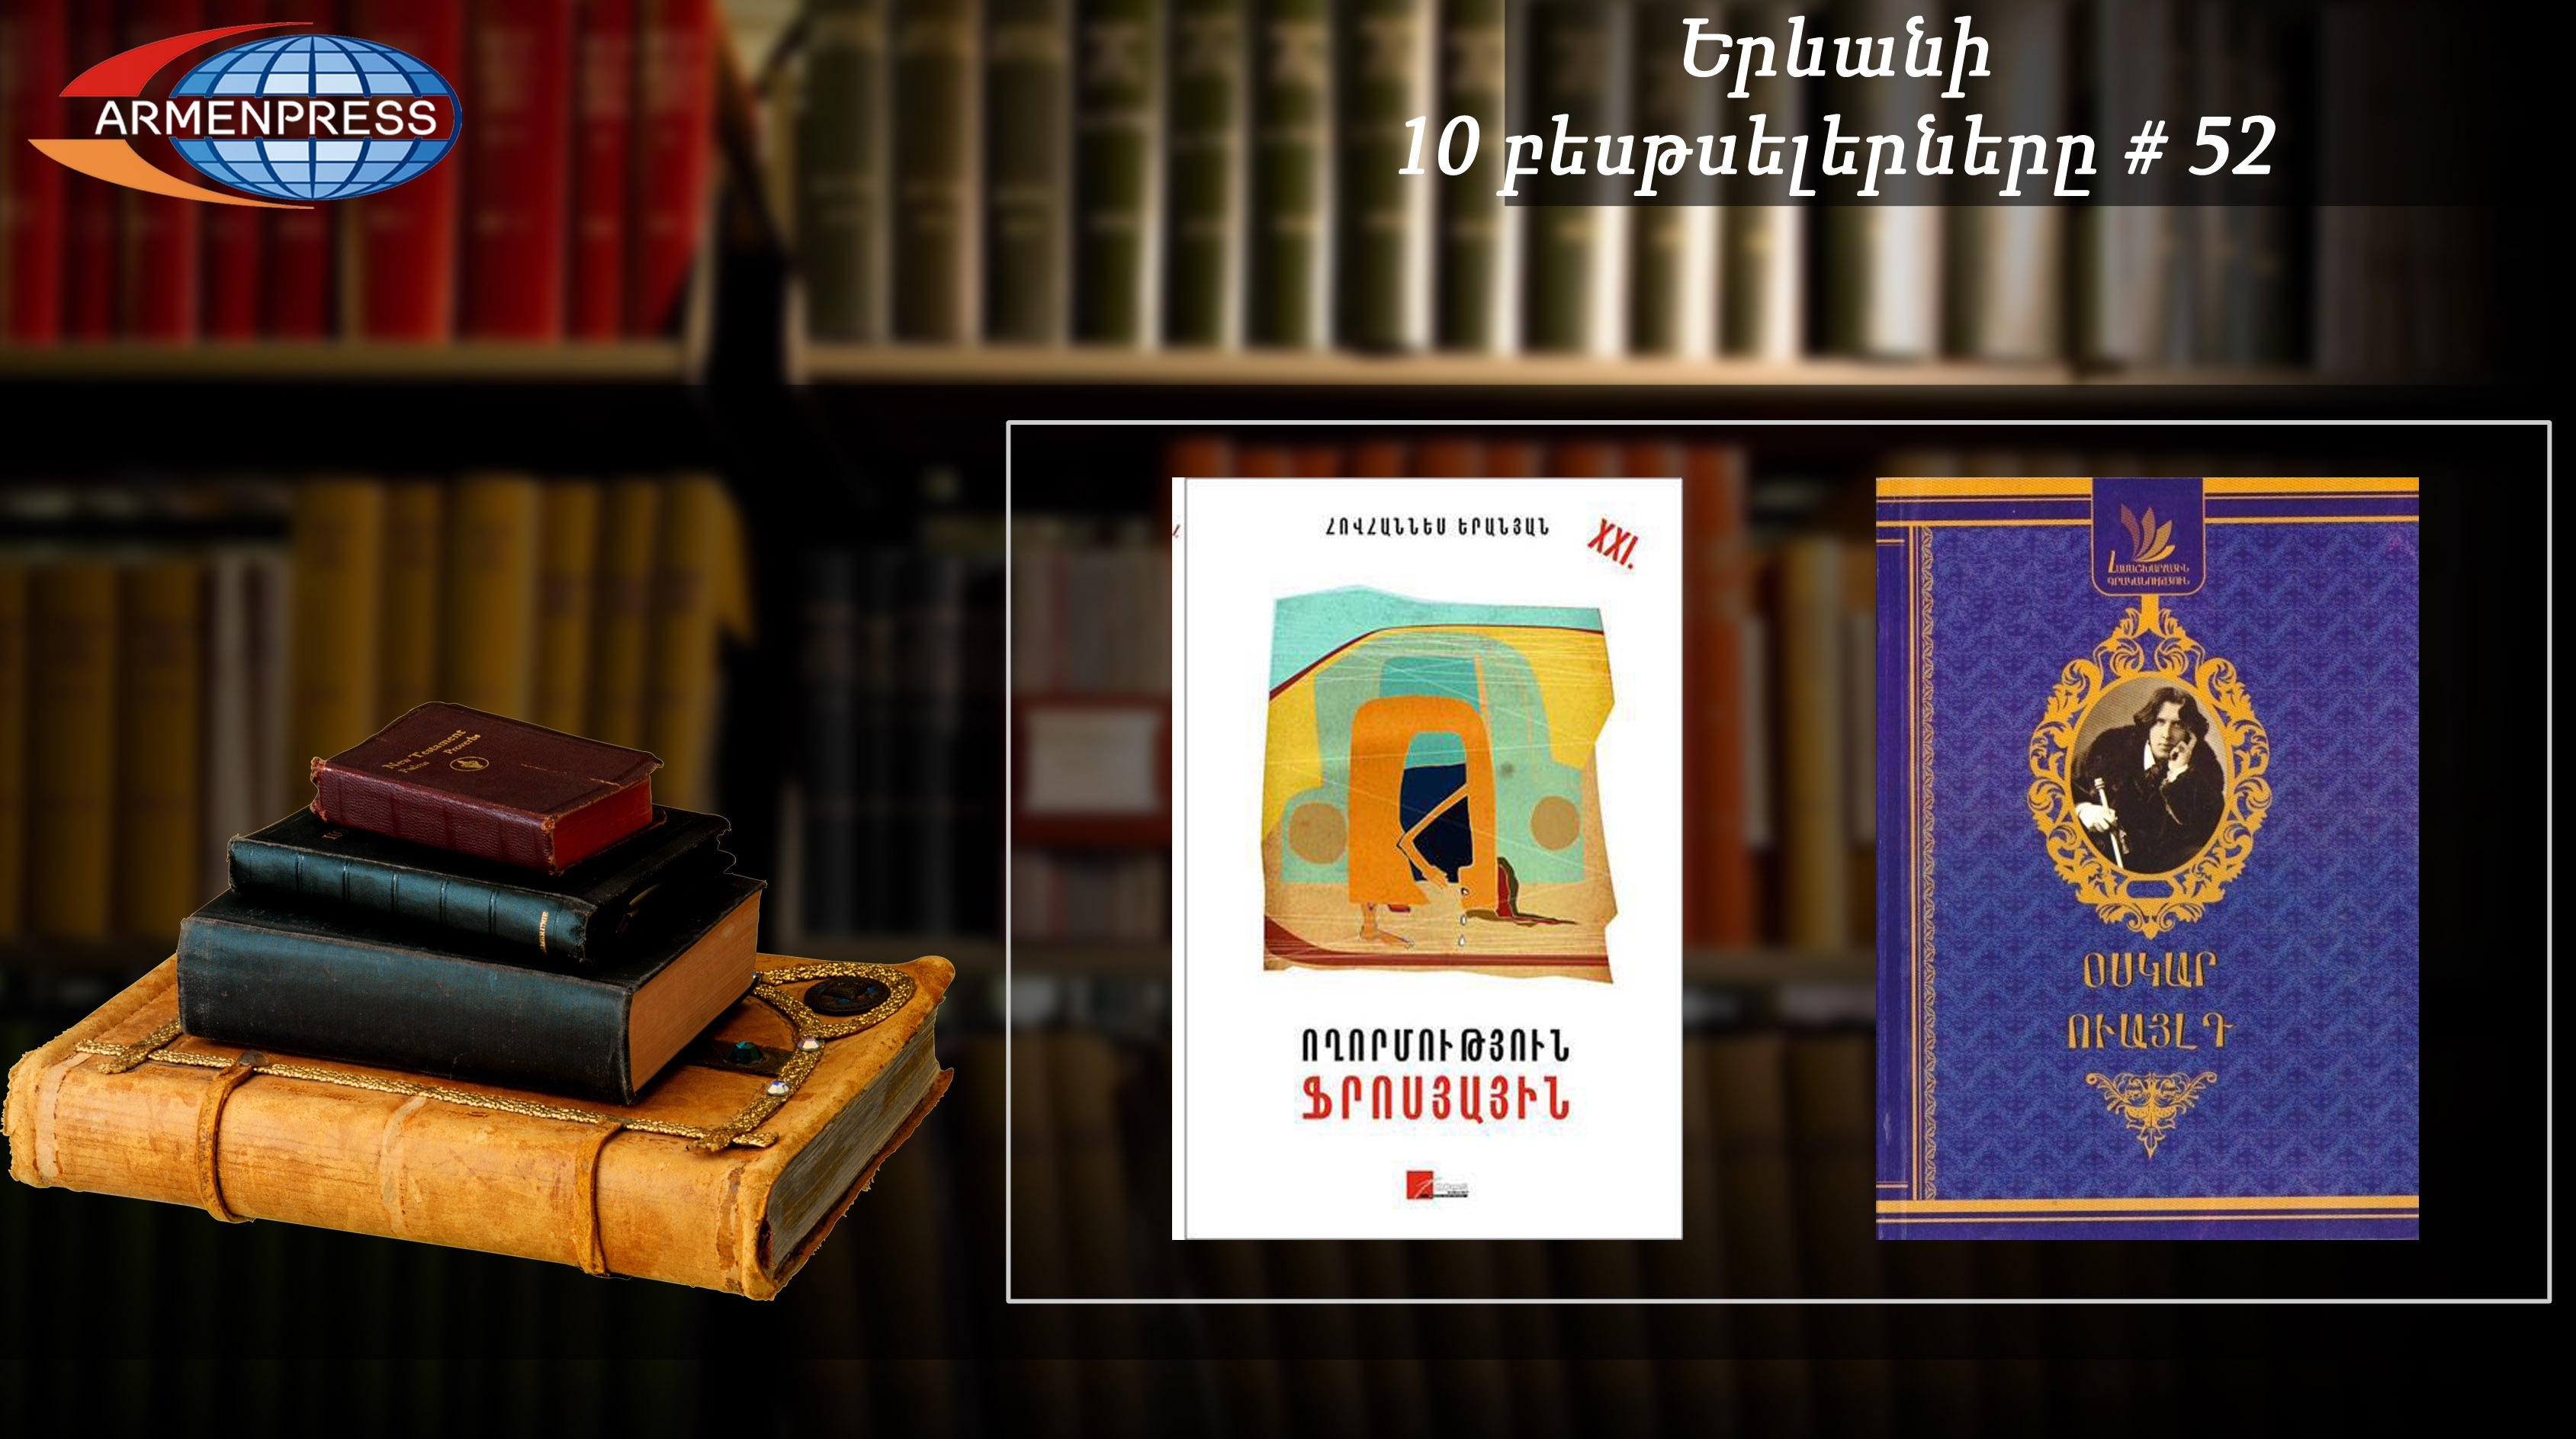 Ереванский бестселлер-52: две новые книги в списке недели